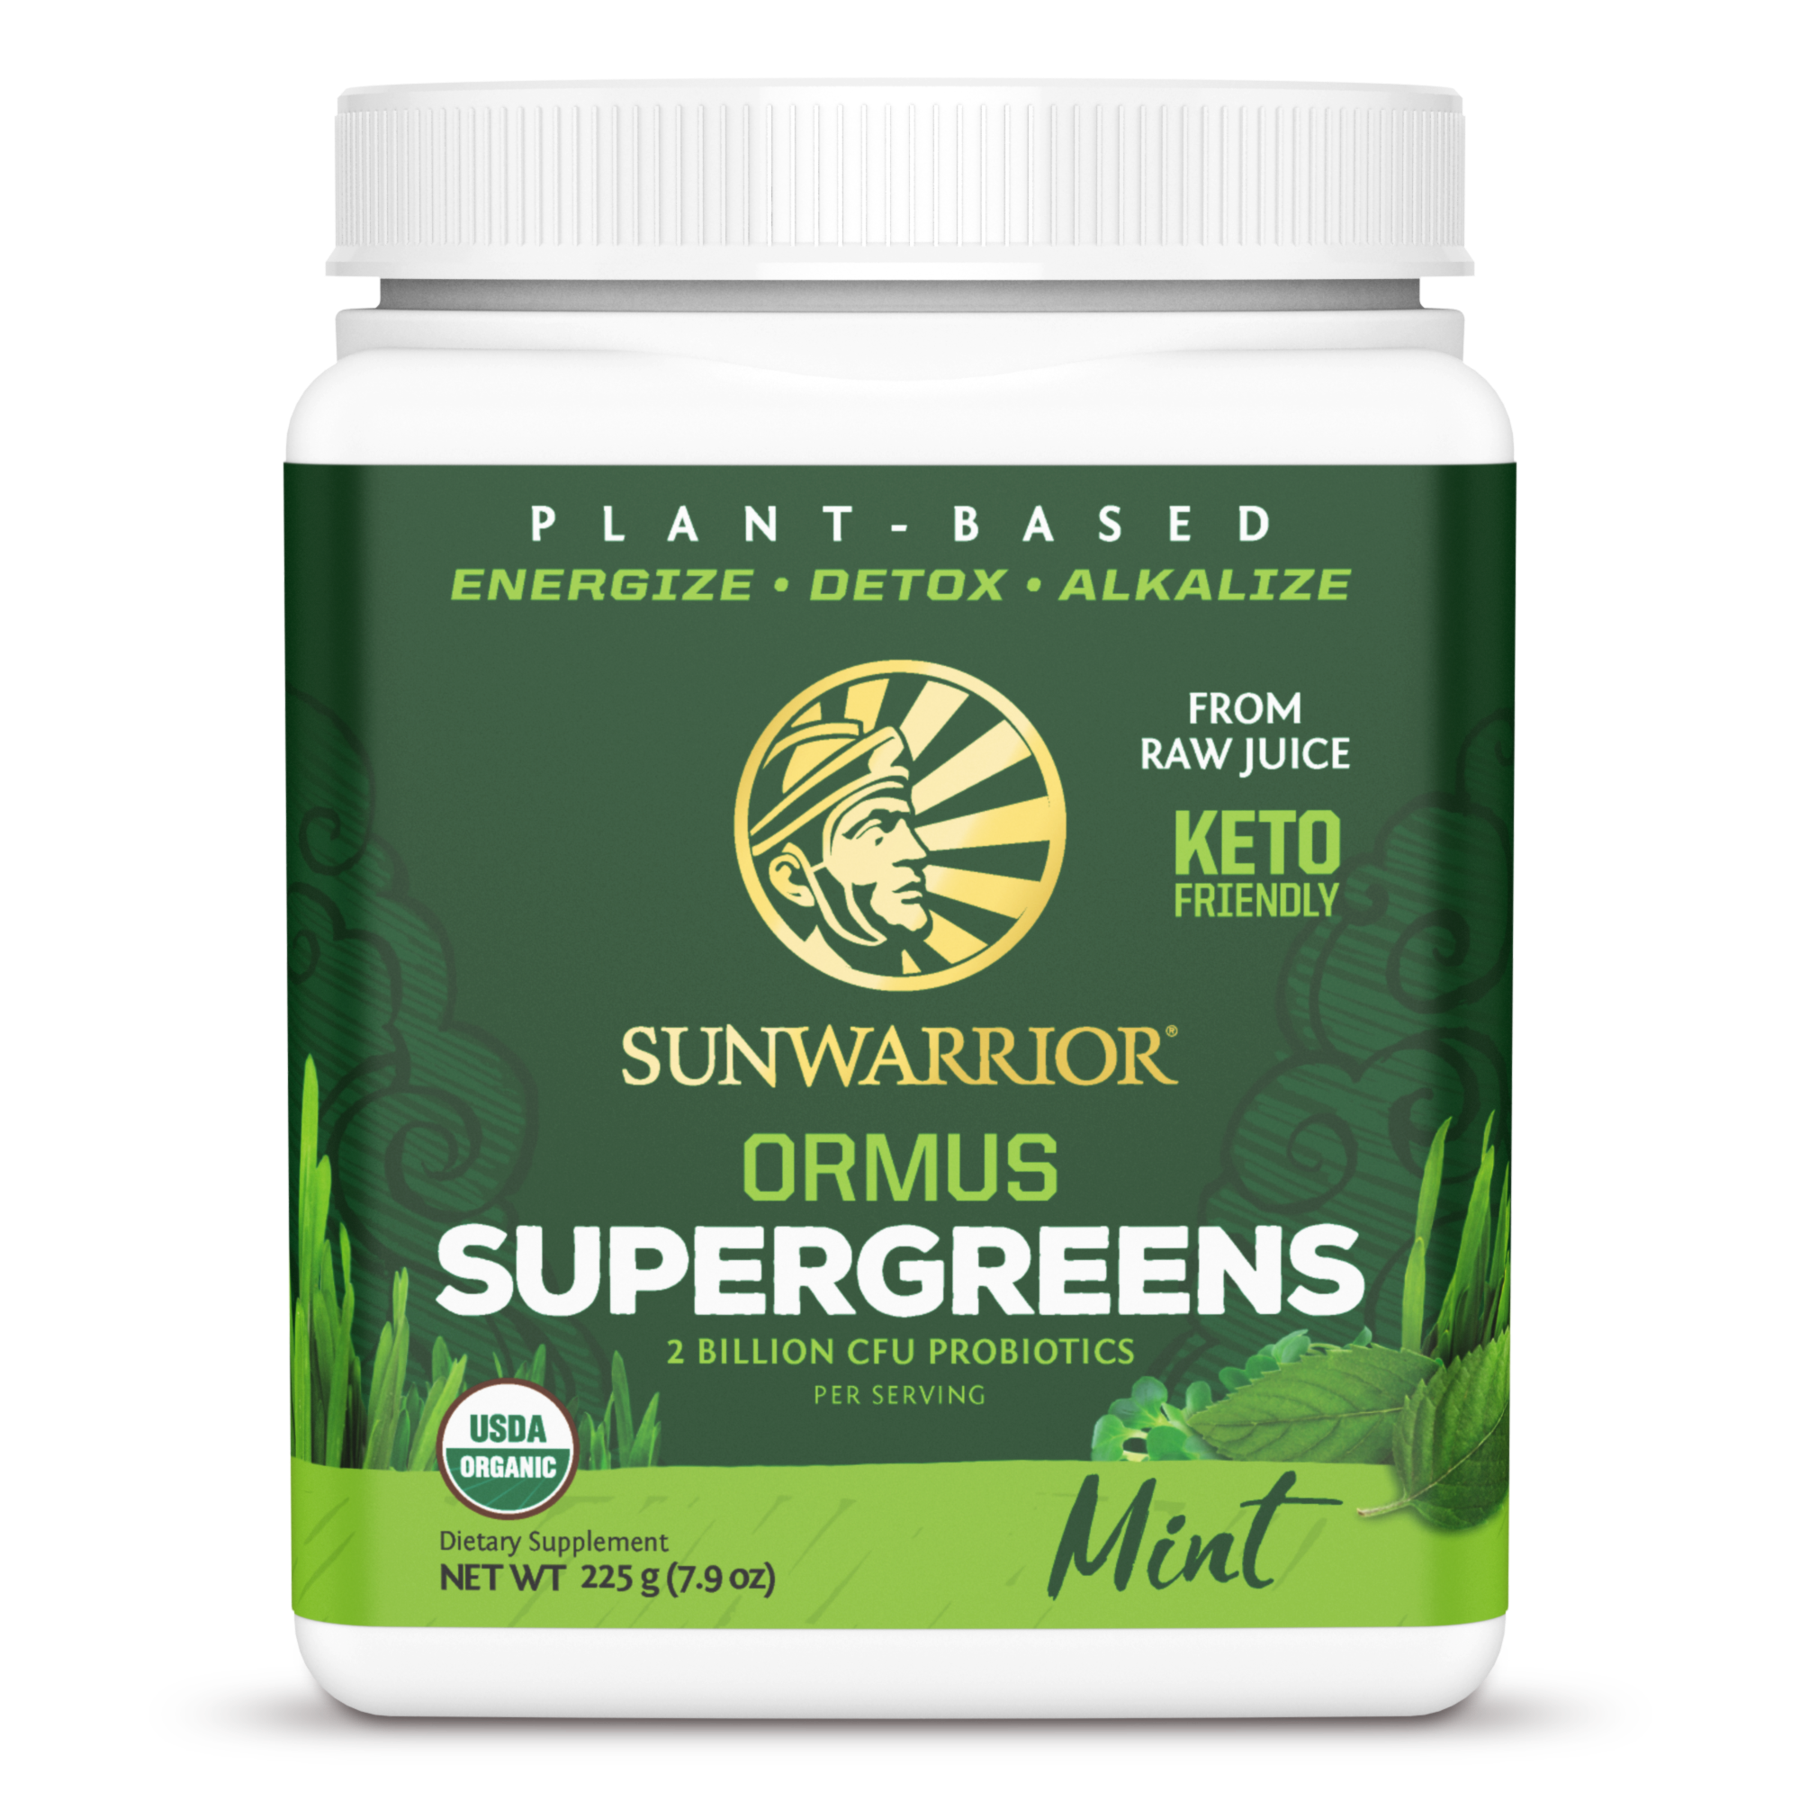 Hoàn Tiền 15%Bột siêu thực phẩm xanh hữu cơ Sunwarrior Ormus SuperGreens